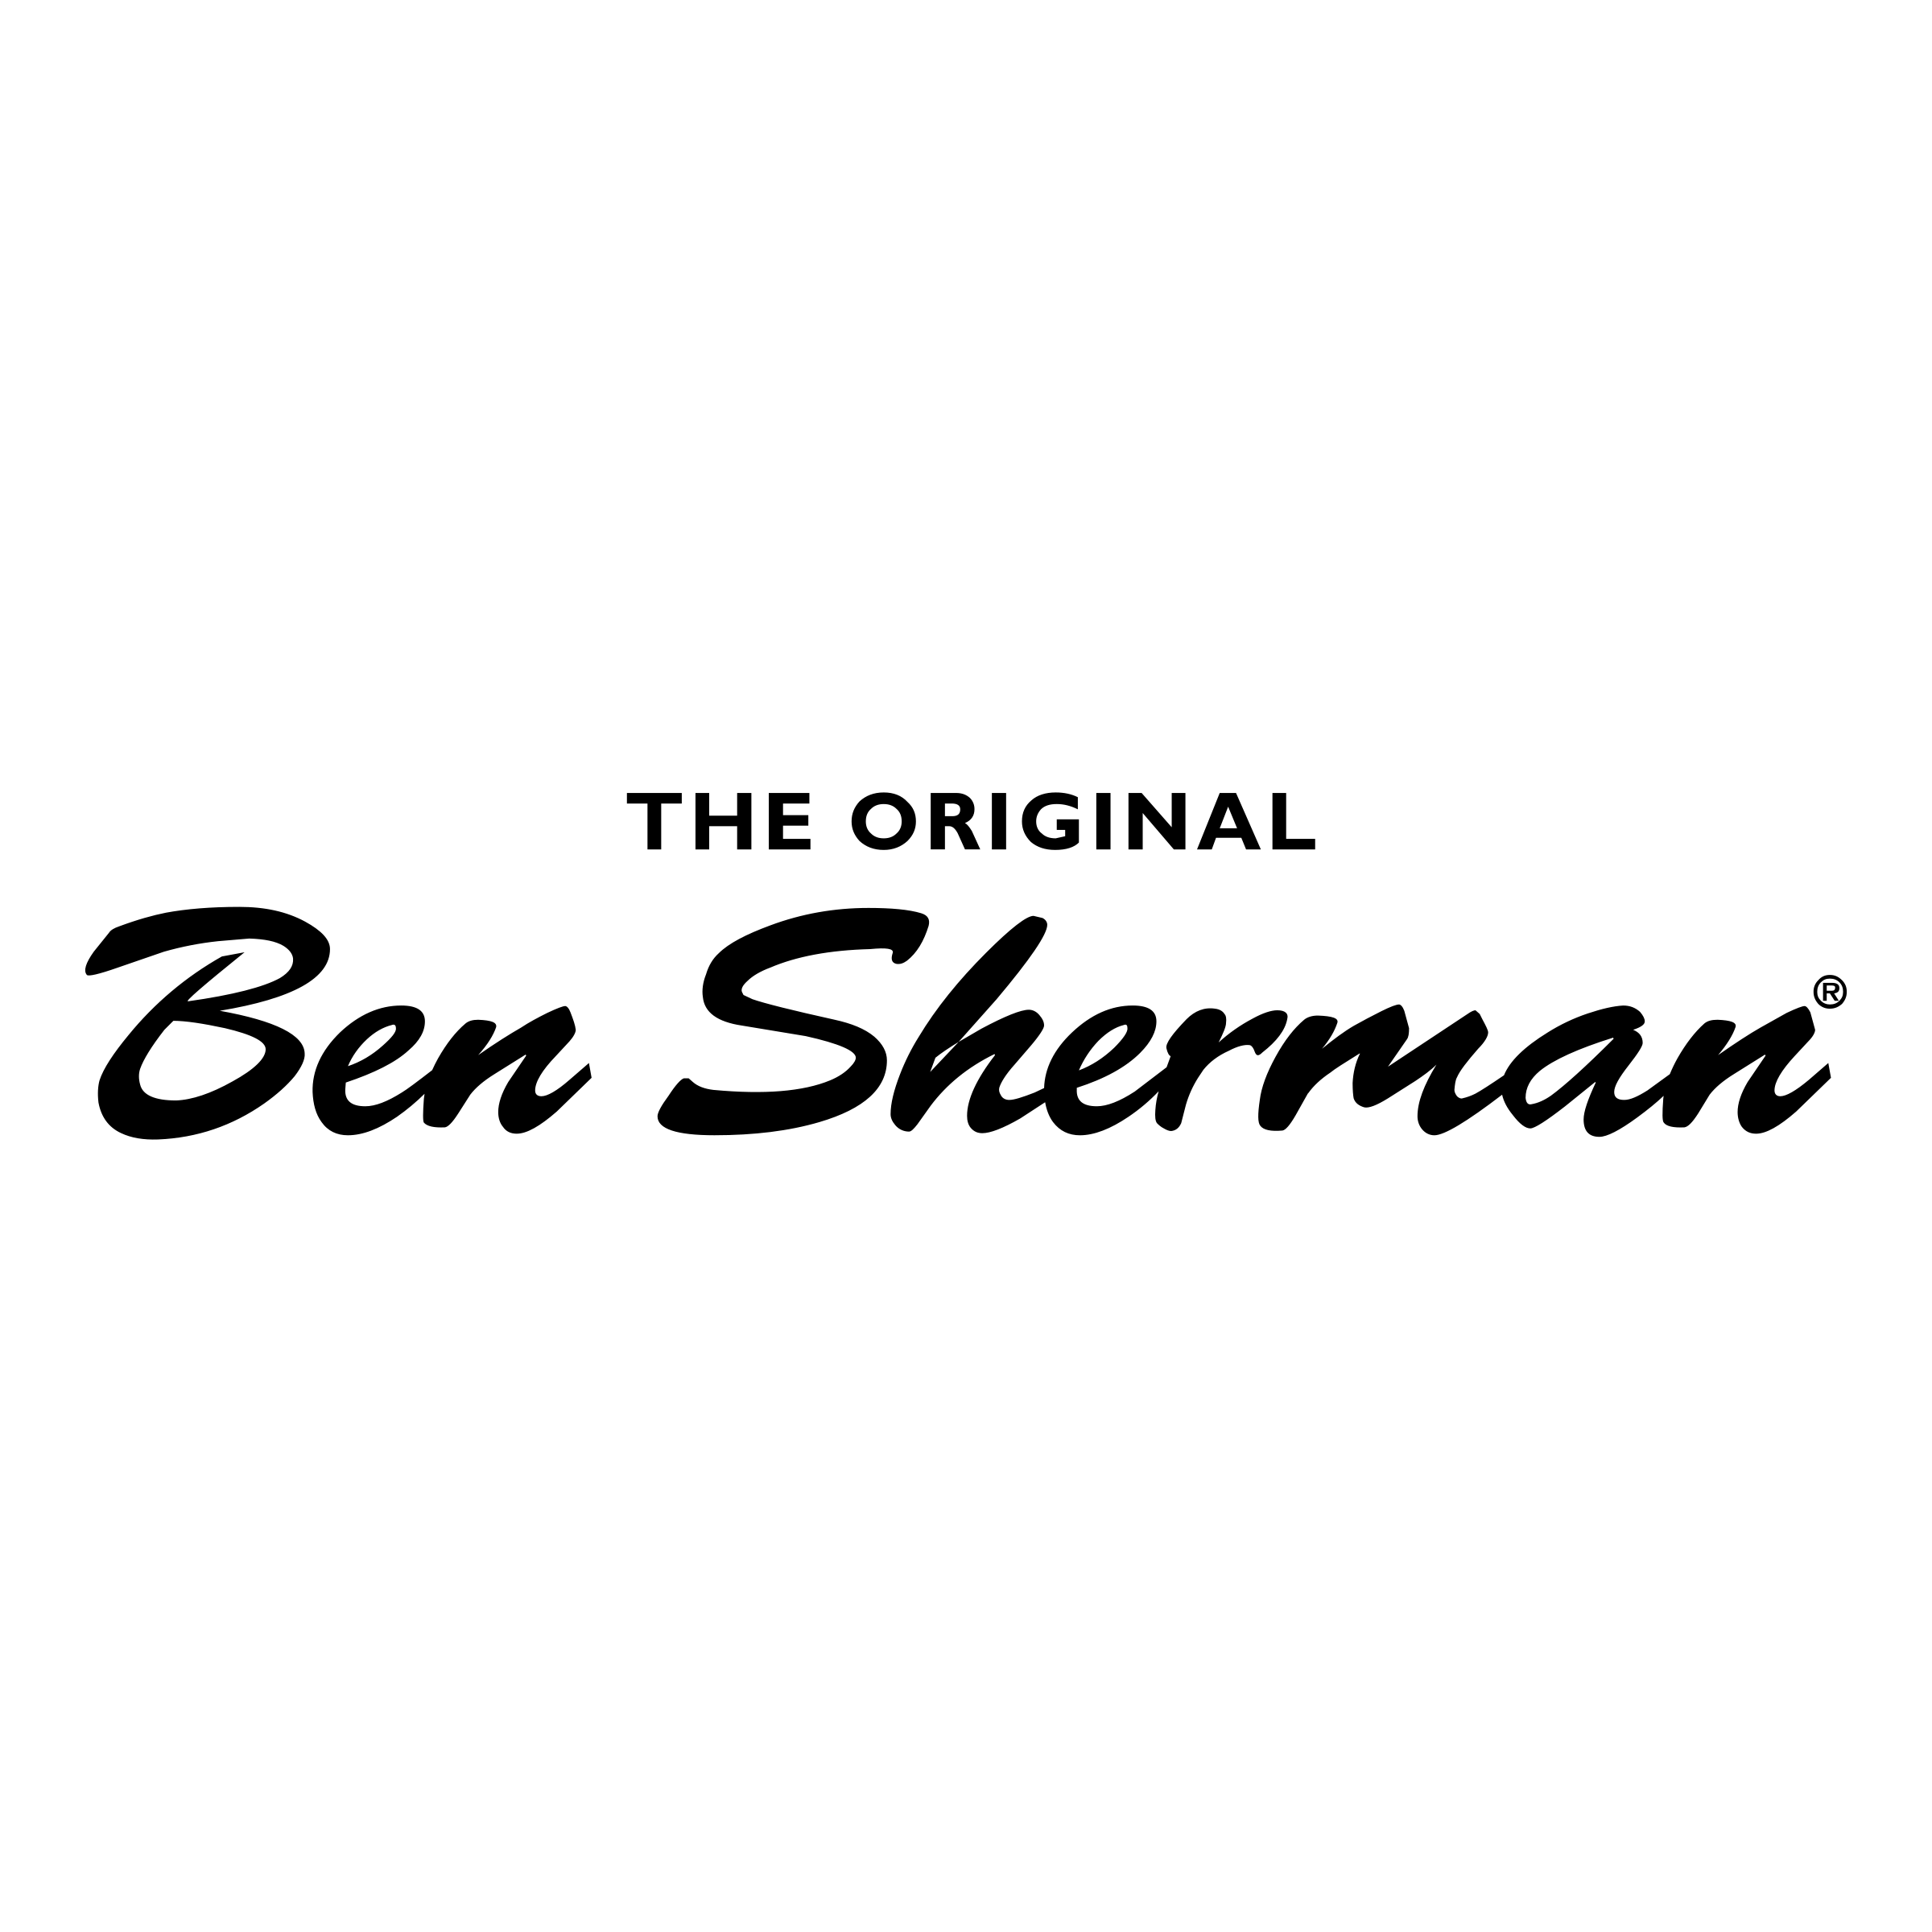 Sherman Logo - Ben Sherman Logo PNG Transparent & SVG Vector - Freebie Supply